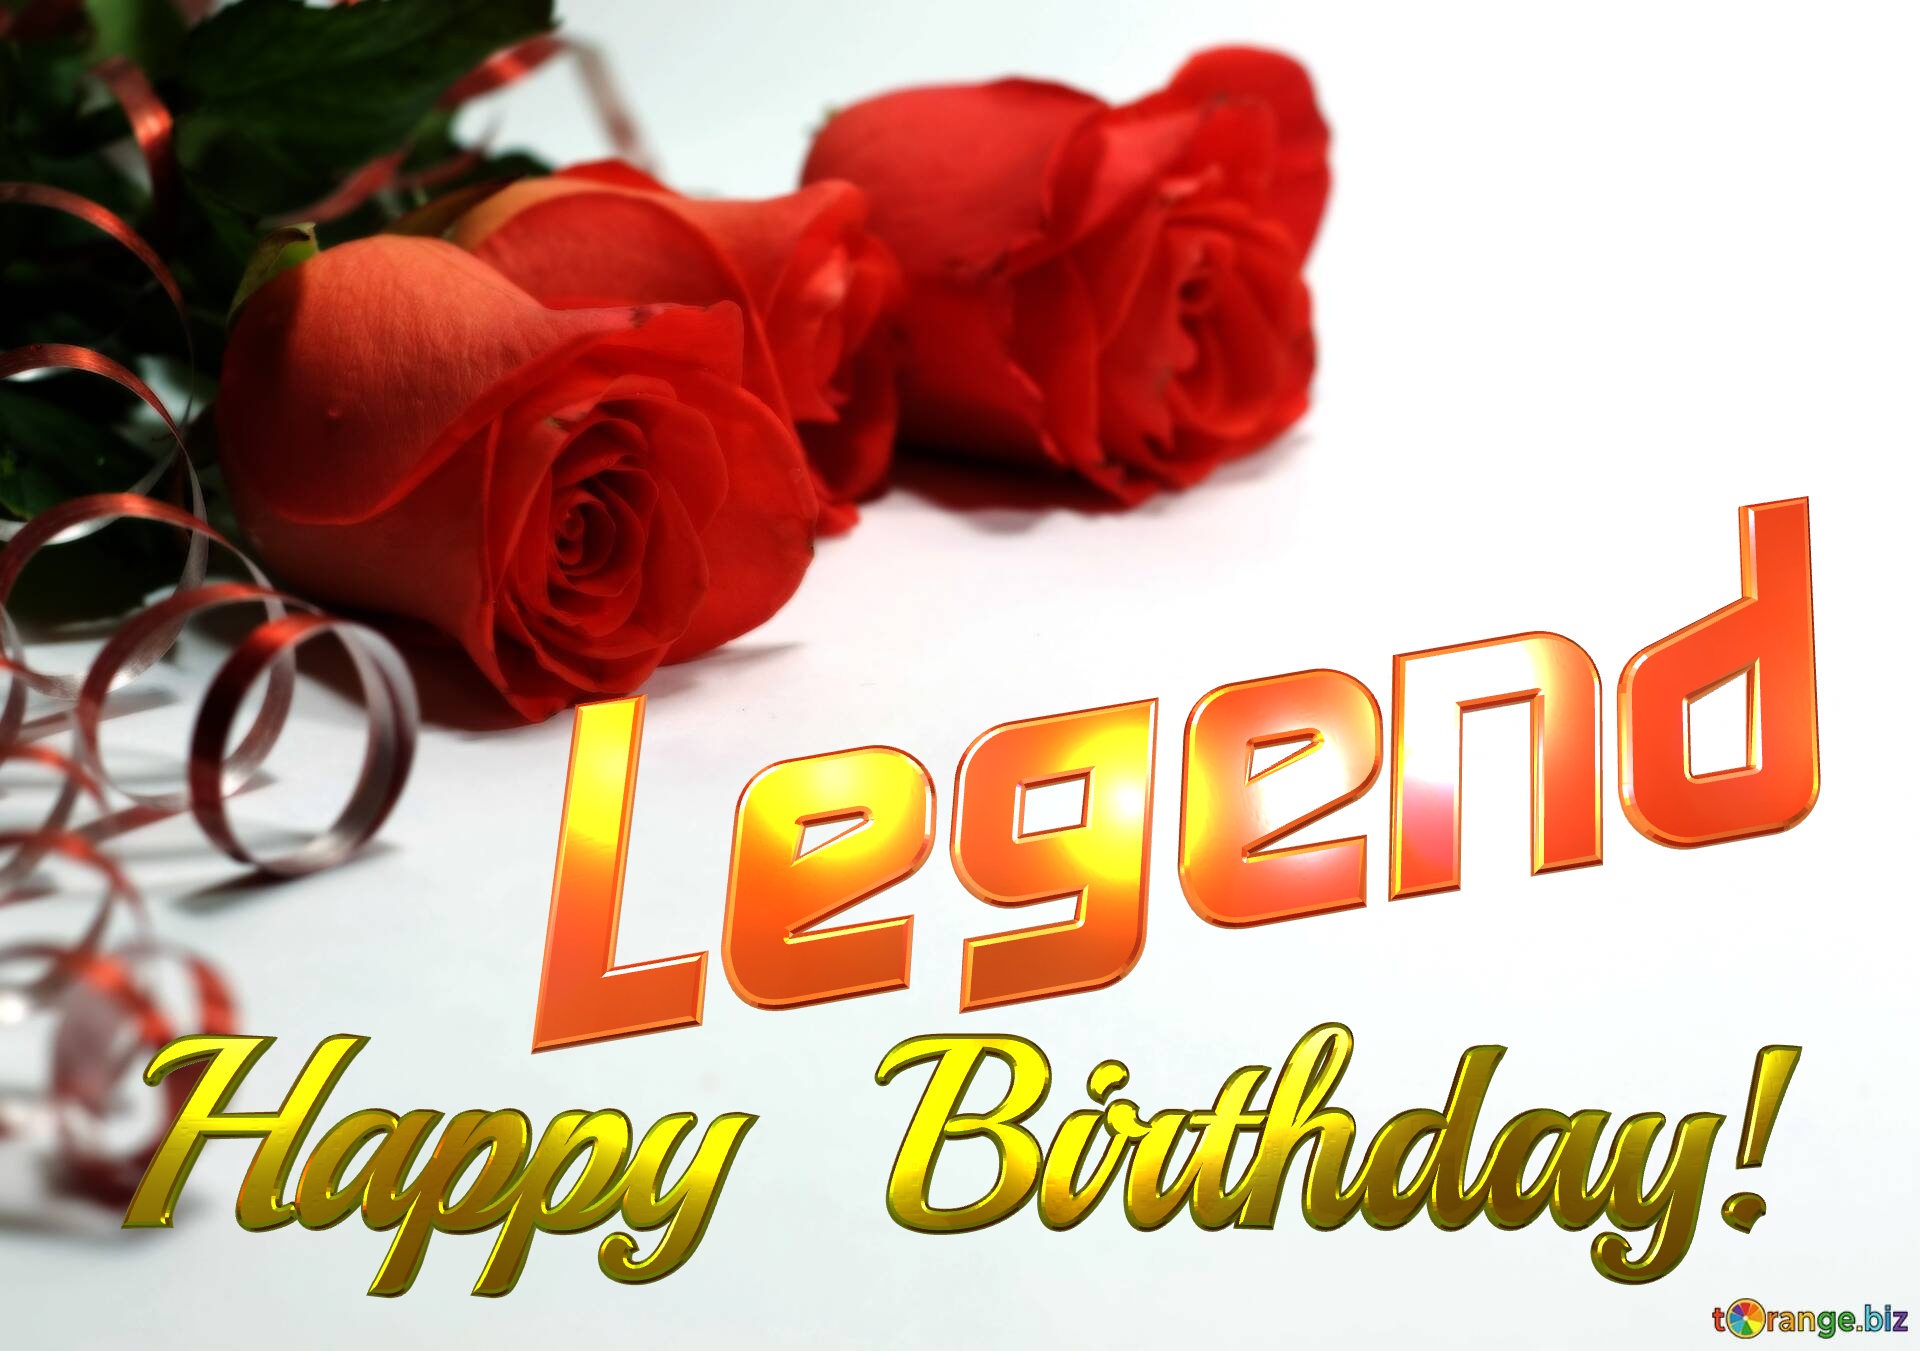 Legend   Birthday   Wishes background №0